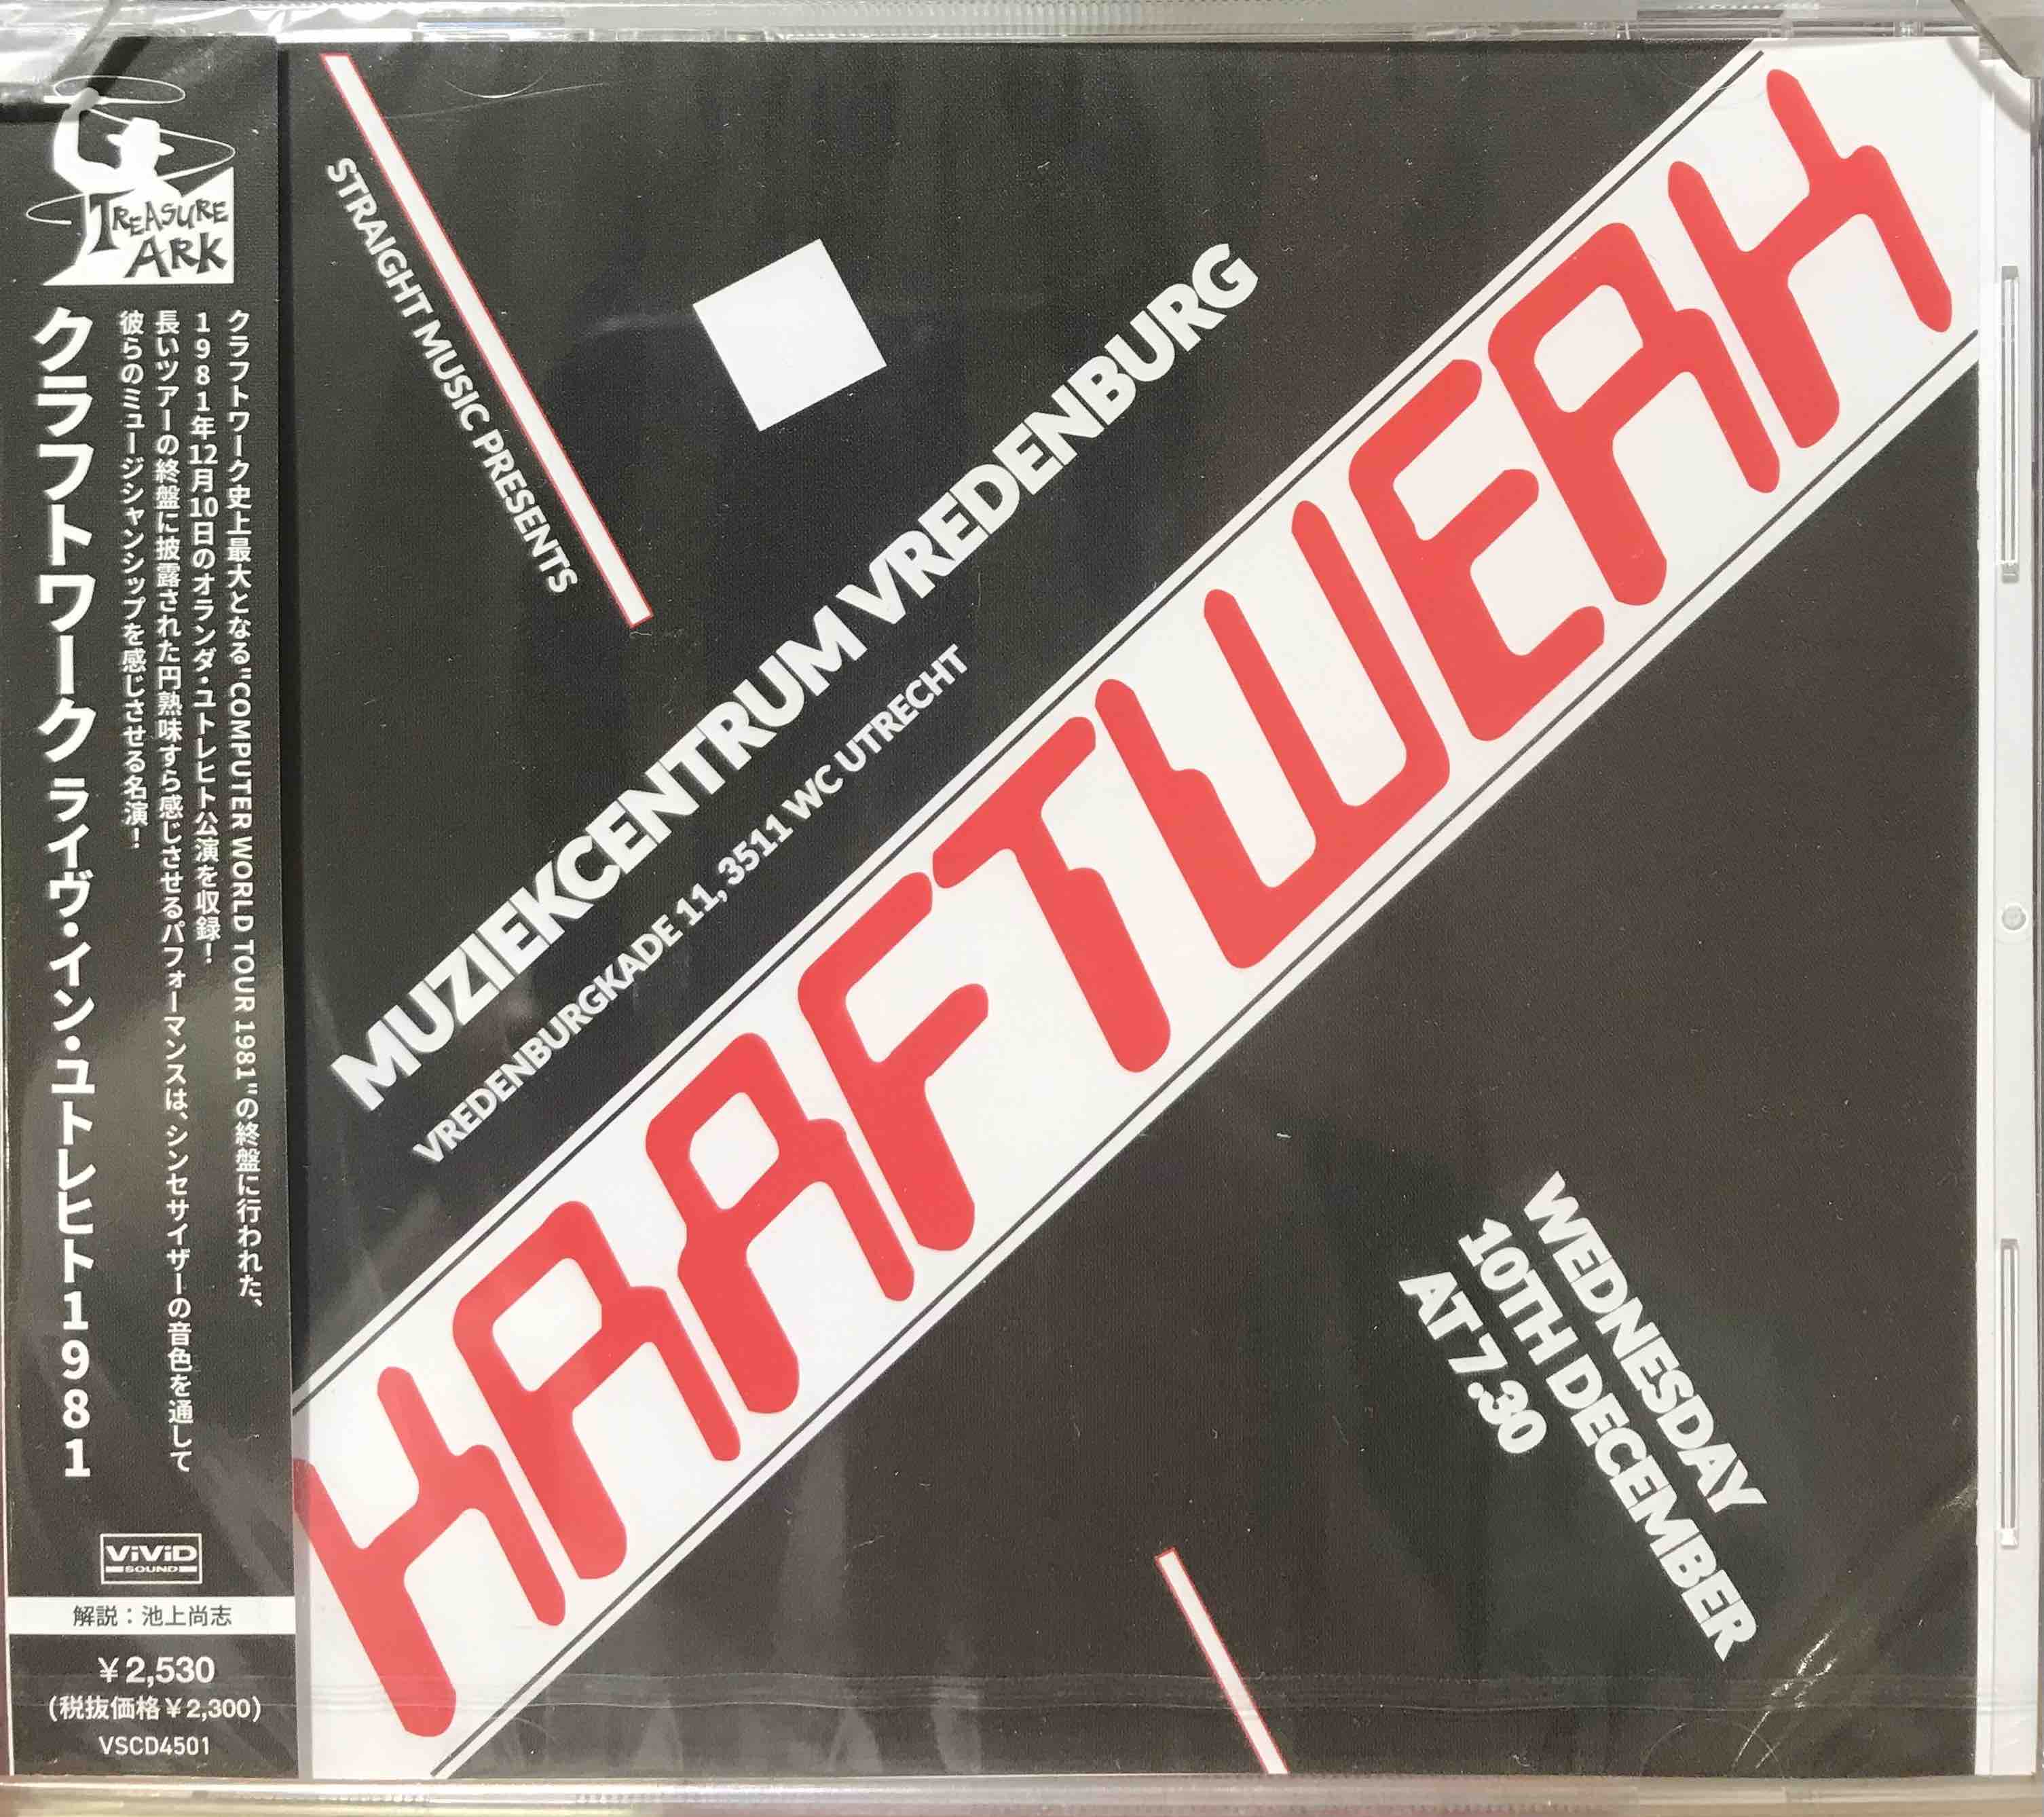 Kraftwerk ‎– Live In Utrecht 1981